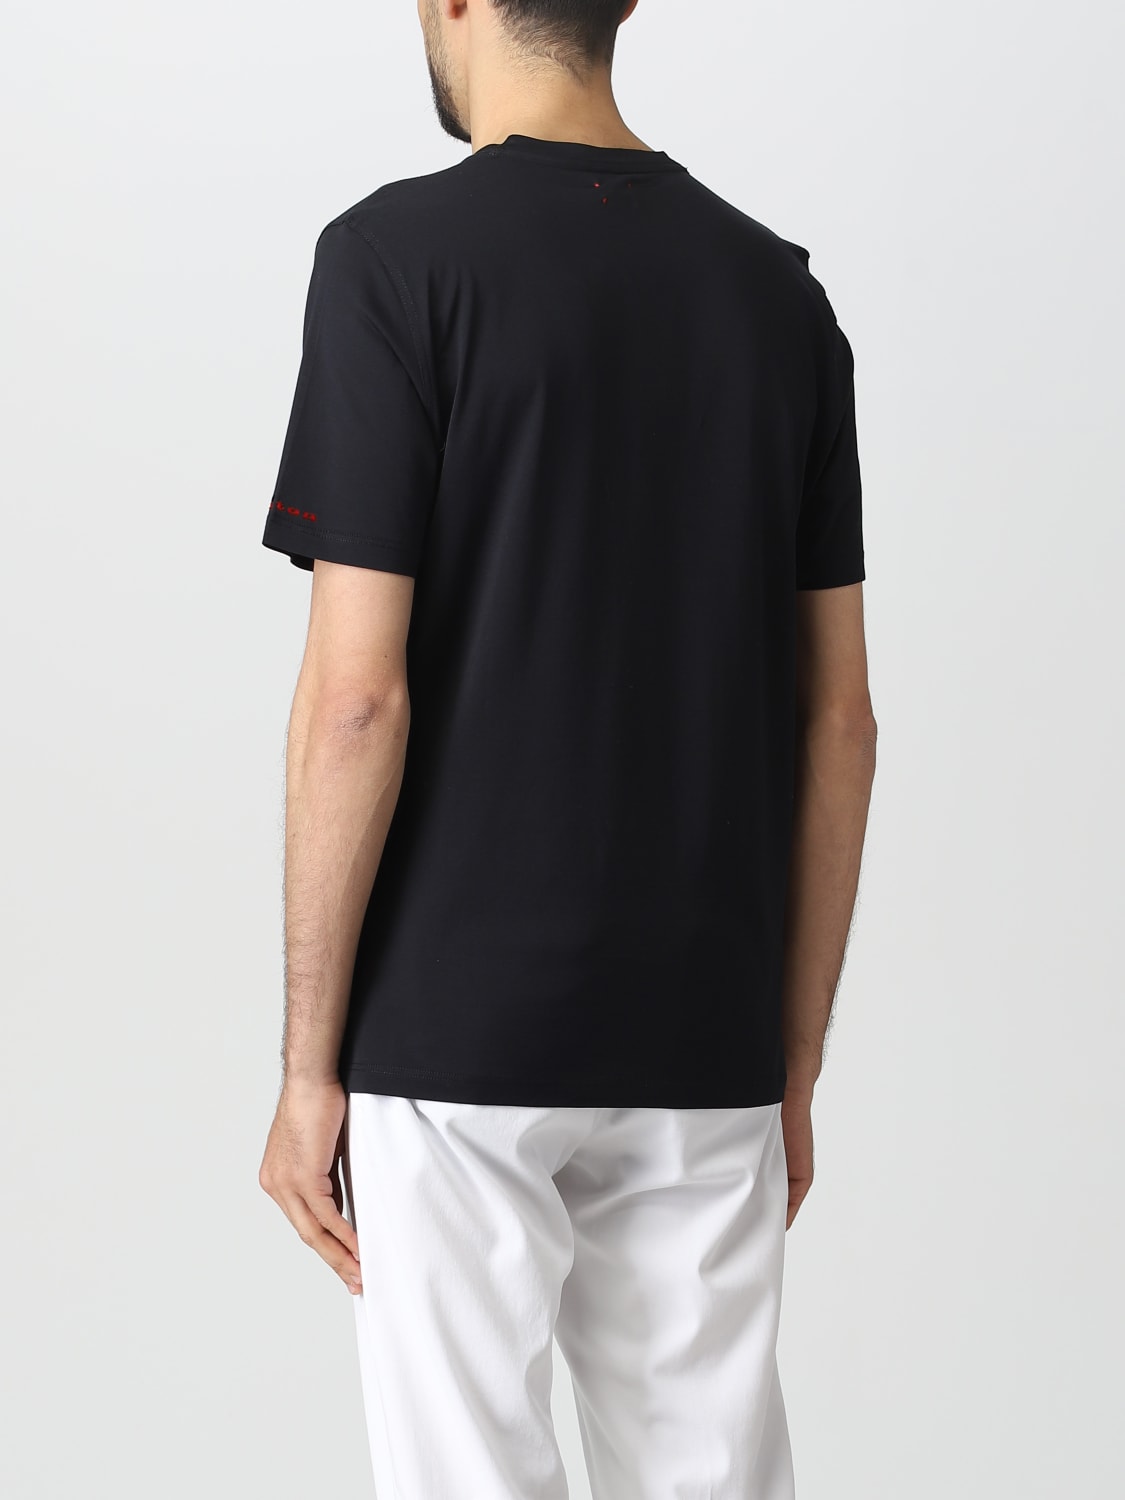 Tシャツ Kiton: Tシャツ Kiton メンズ ブラック 2